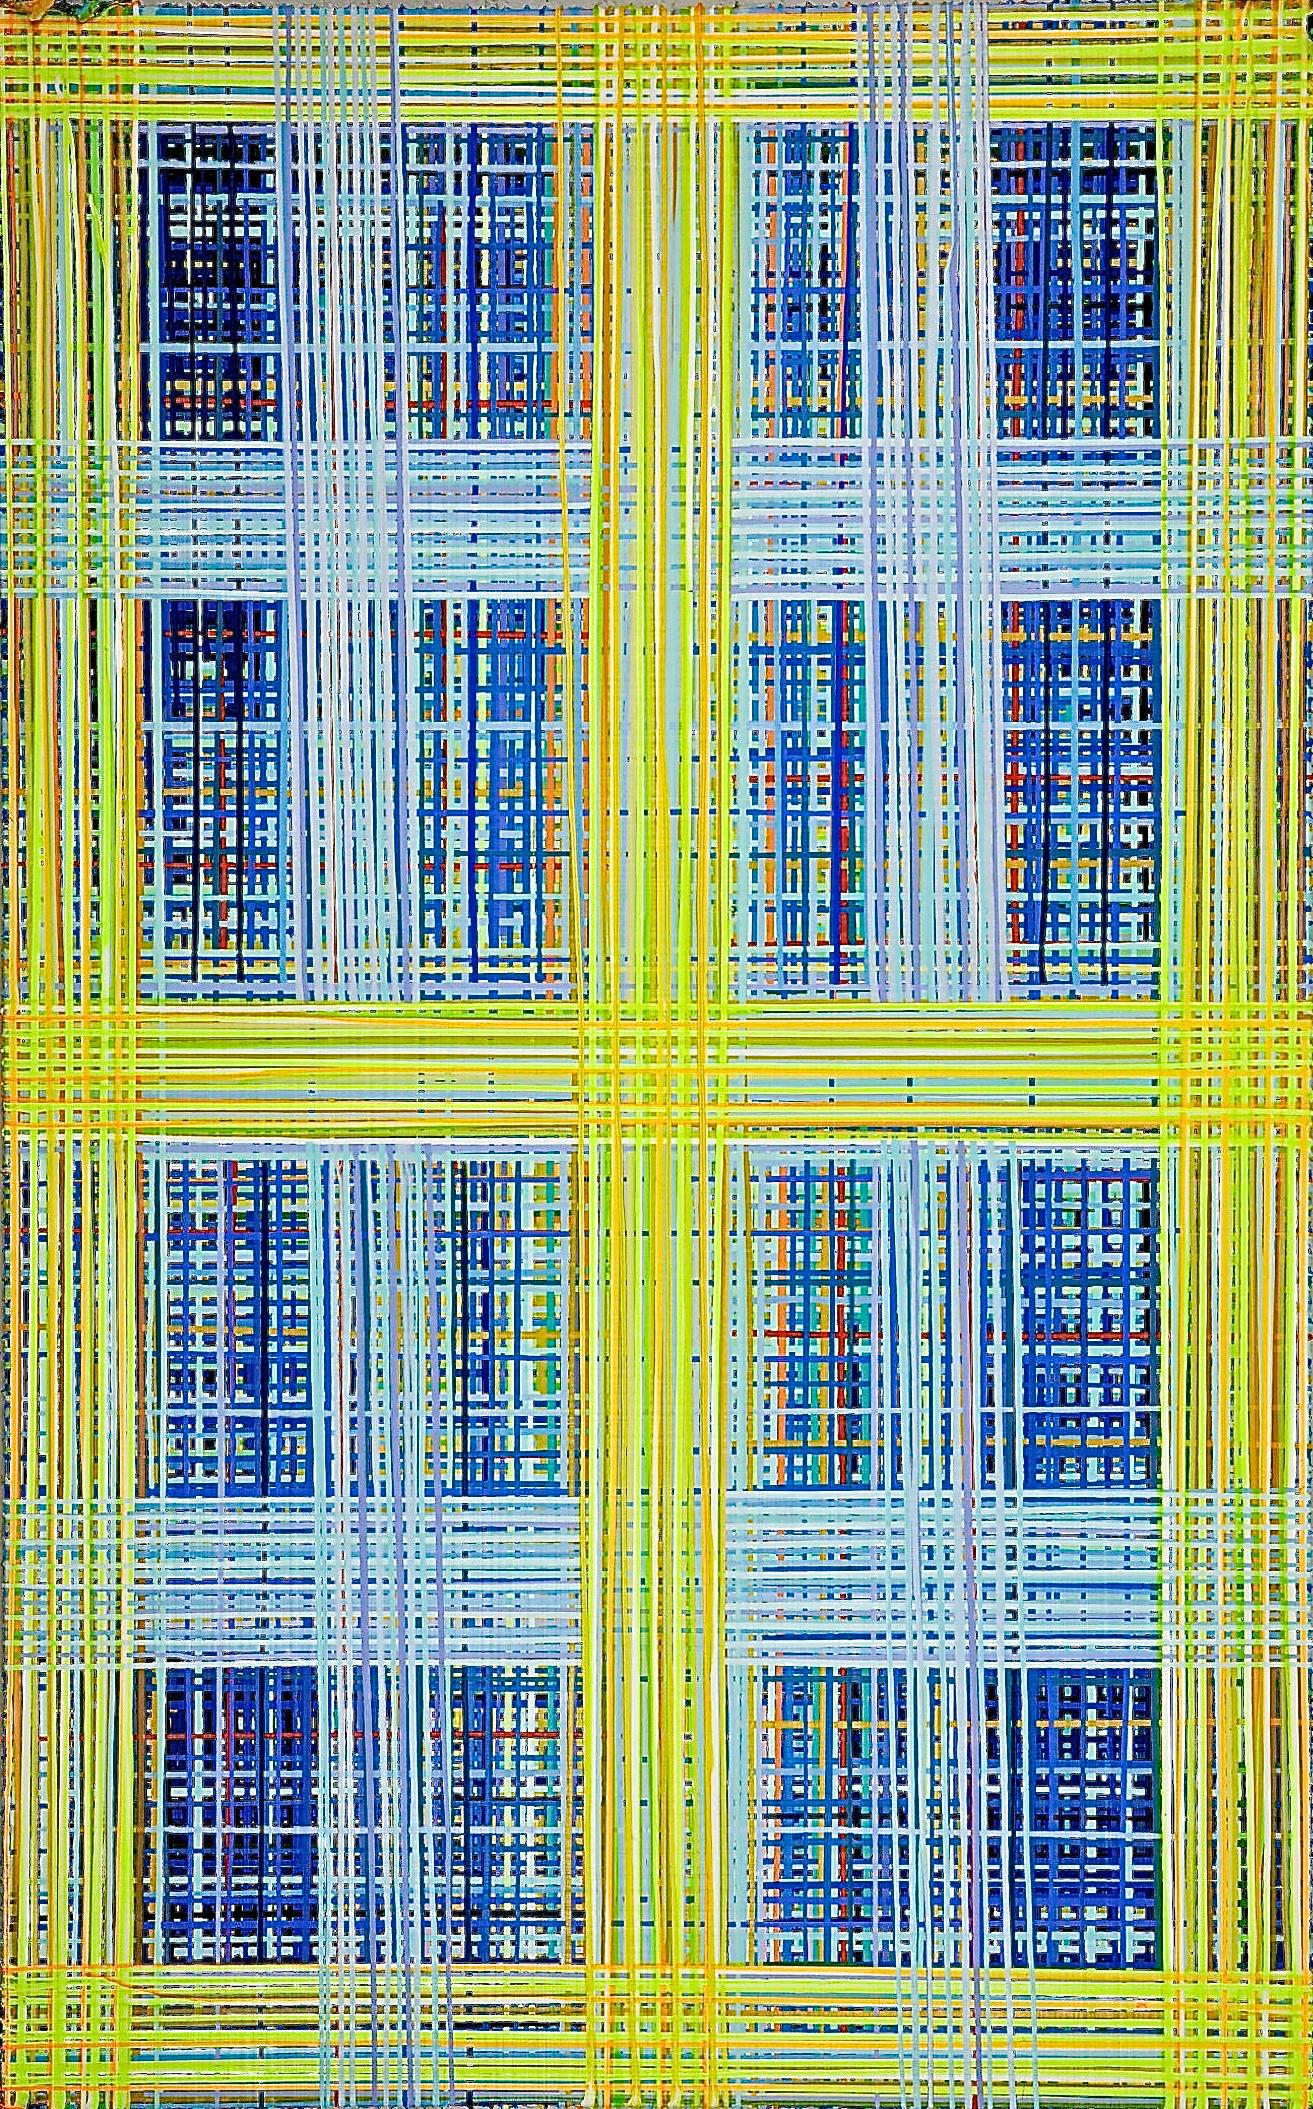 60" x 96" Abstraktes Acrylgemälde des in NY lebenden Künstlers Jon James.

Jon James' Arbeiten zeichnen sich durch prächtige Farbflächen aus und nutzen eine vertraute Methode, das Tropfen von Farbe, um eine unglaubliche Tiefe zu erzeugen und